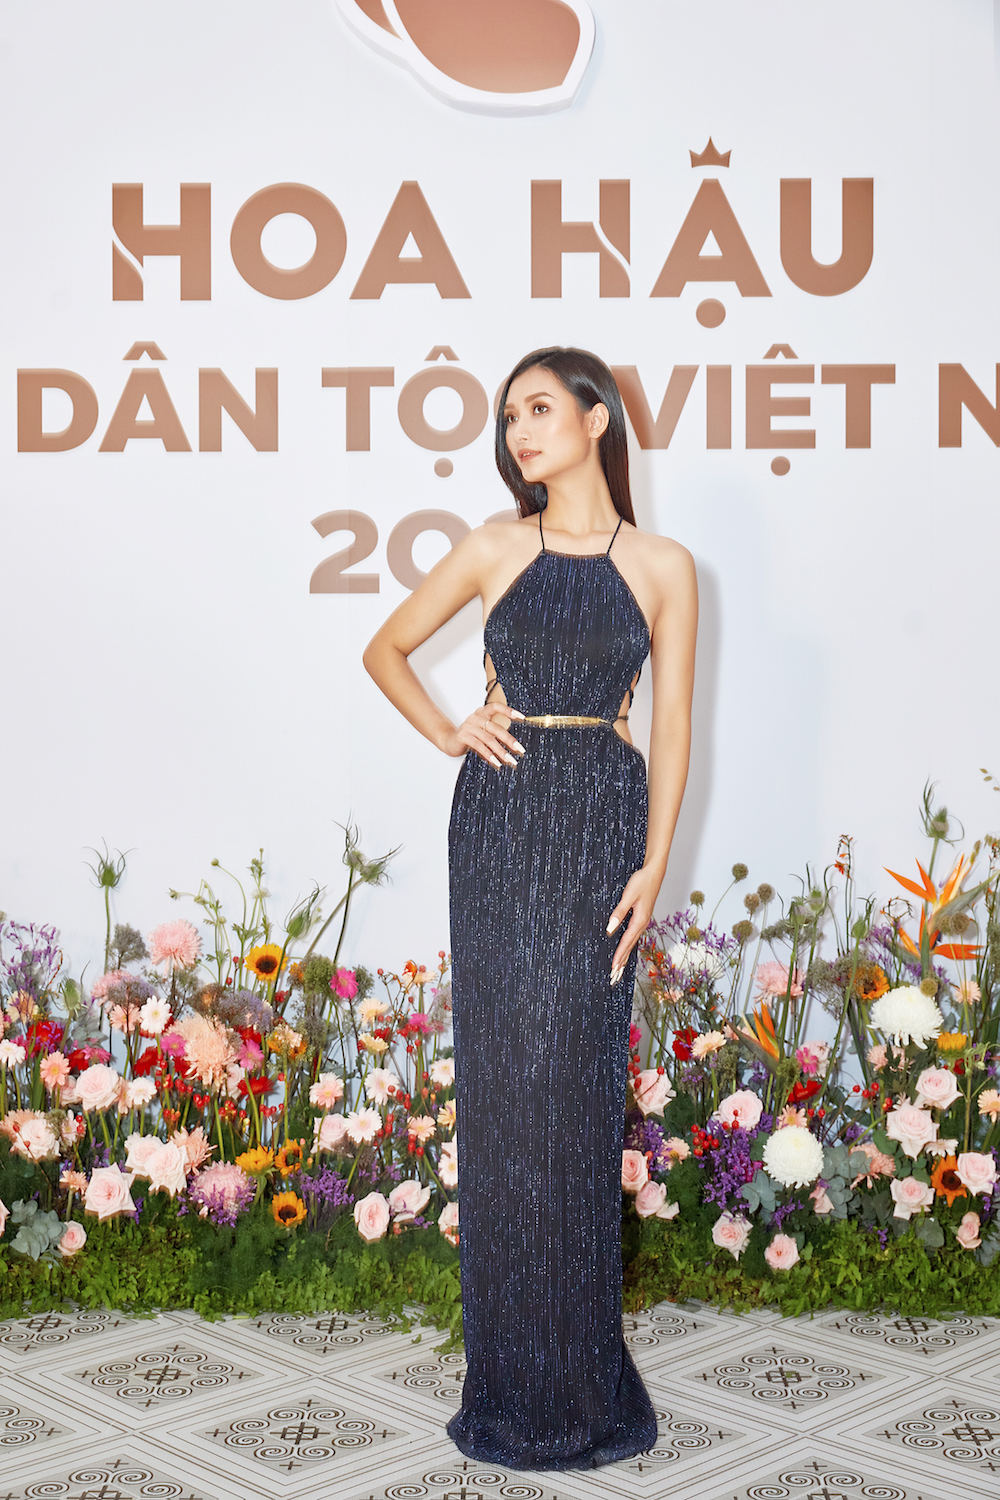 Hoa hau cac dan toc Viet Nam Nguyen Tran Van Dinh - Profile ấn tượng của top 30 thí sinh vòng Chung khảo phía Nam – Hoa hậu các Dân tộc Việt Nam